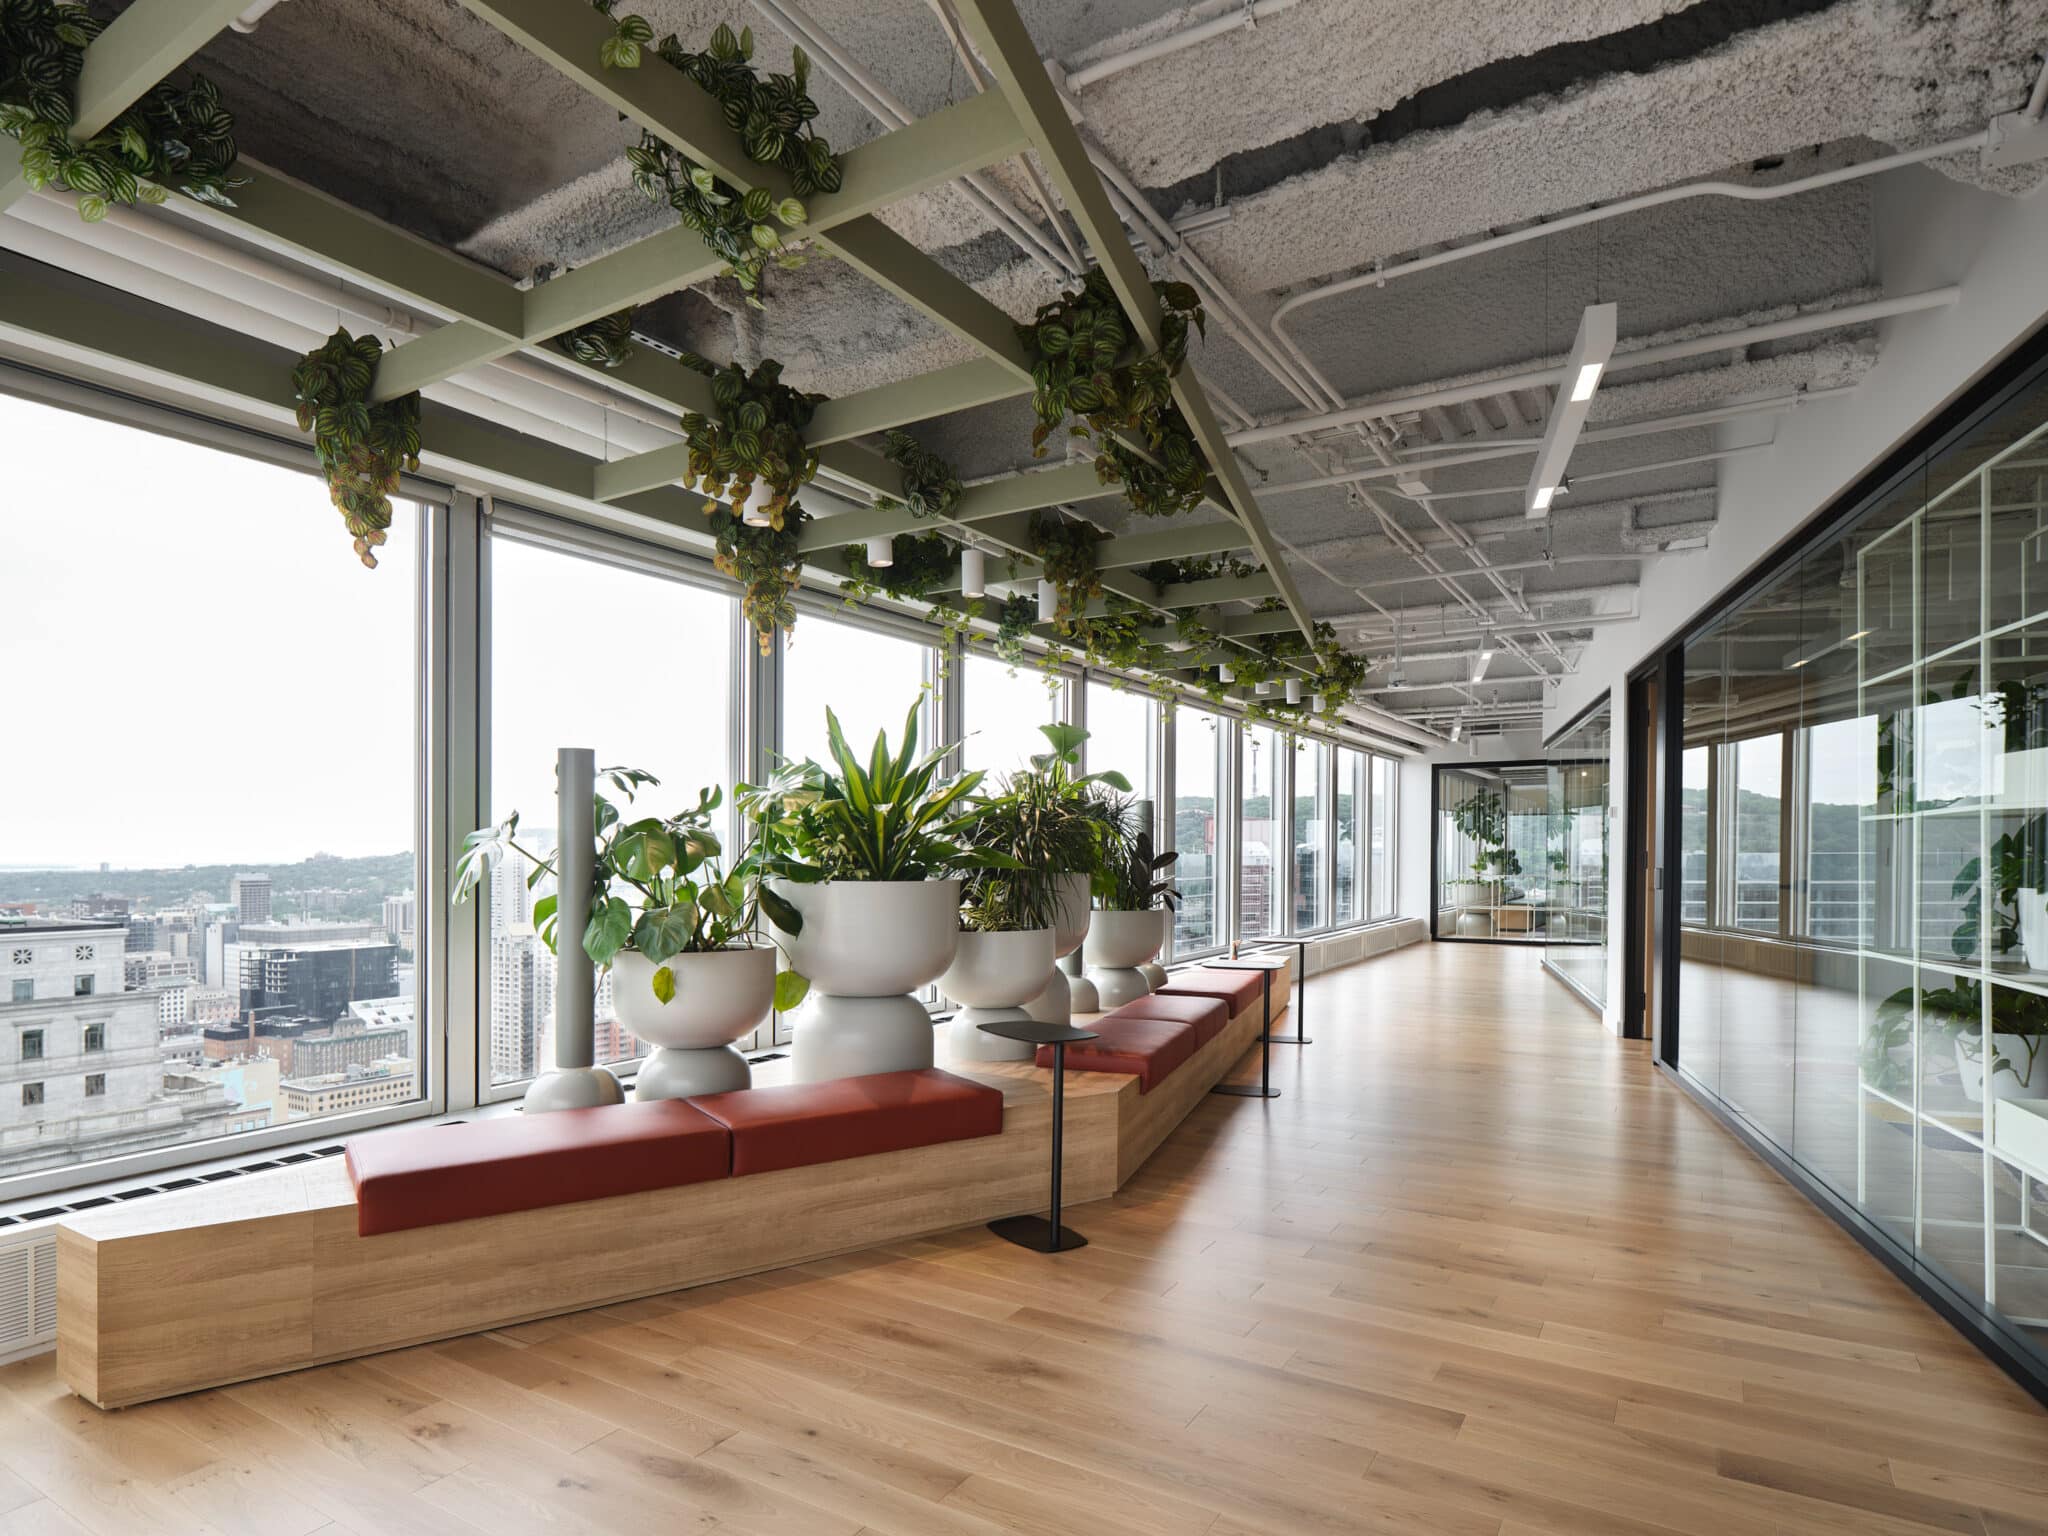 Projet de design corporatif - Corridor et plantes au FLEX à Place Ville Marie pour Ivanhoé Cambridge par VAD Designers d'espaces